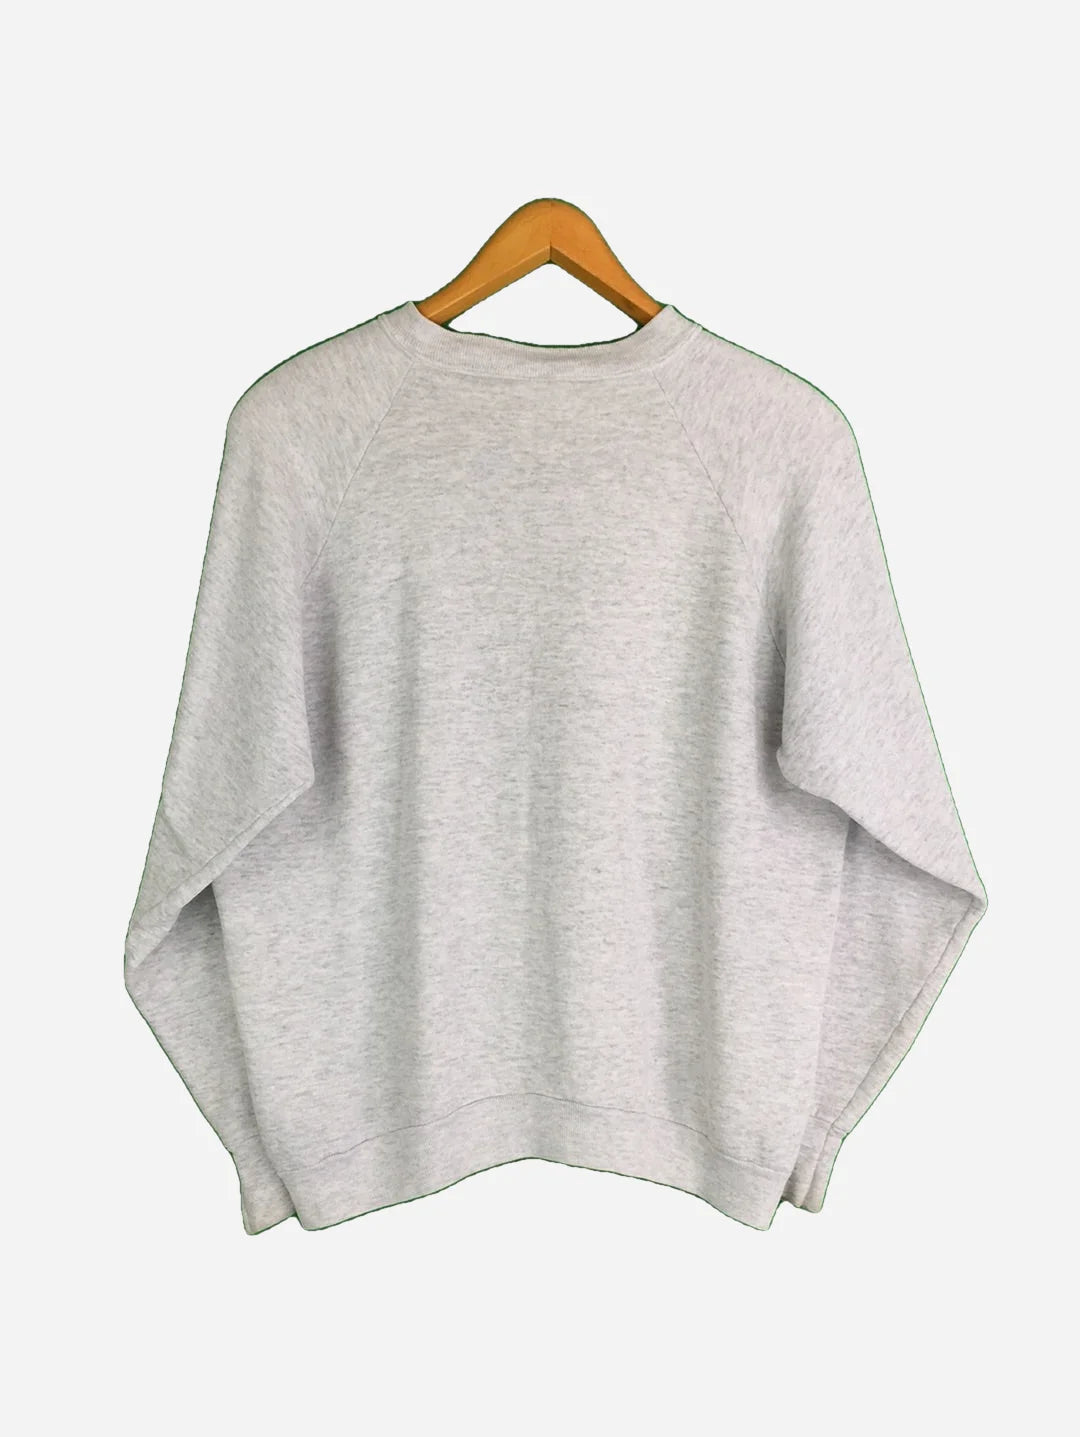 New York Sweater (S)